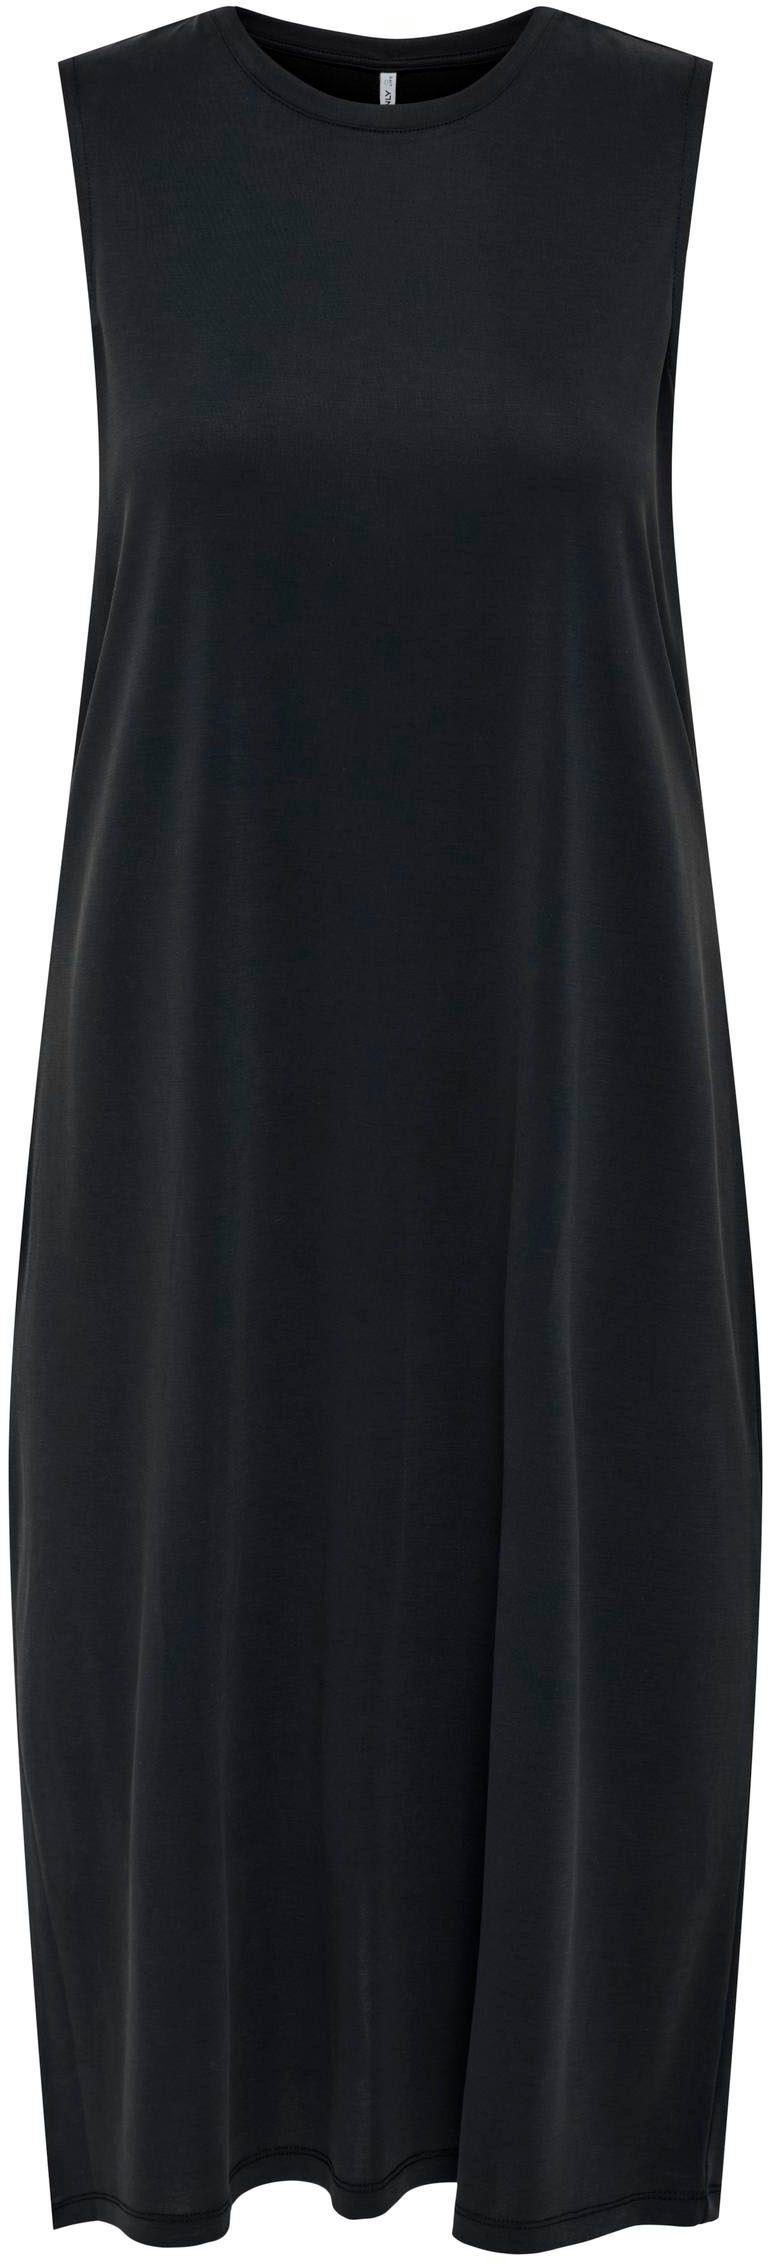 Jerseykleid ONLFREE MODAL S/L in Black ONLY DRESS JRS Midi-Länge NOOS